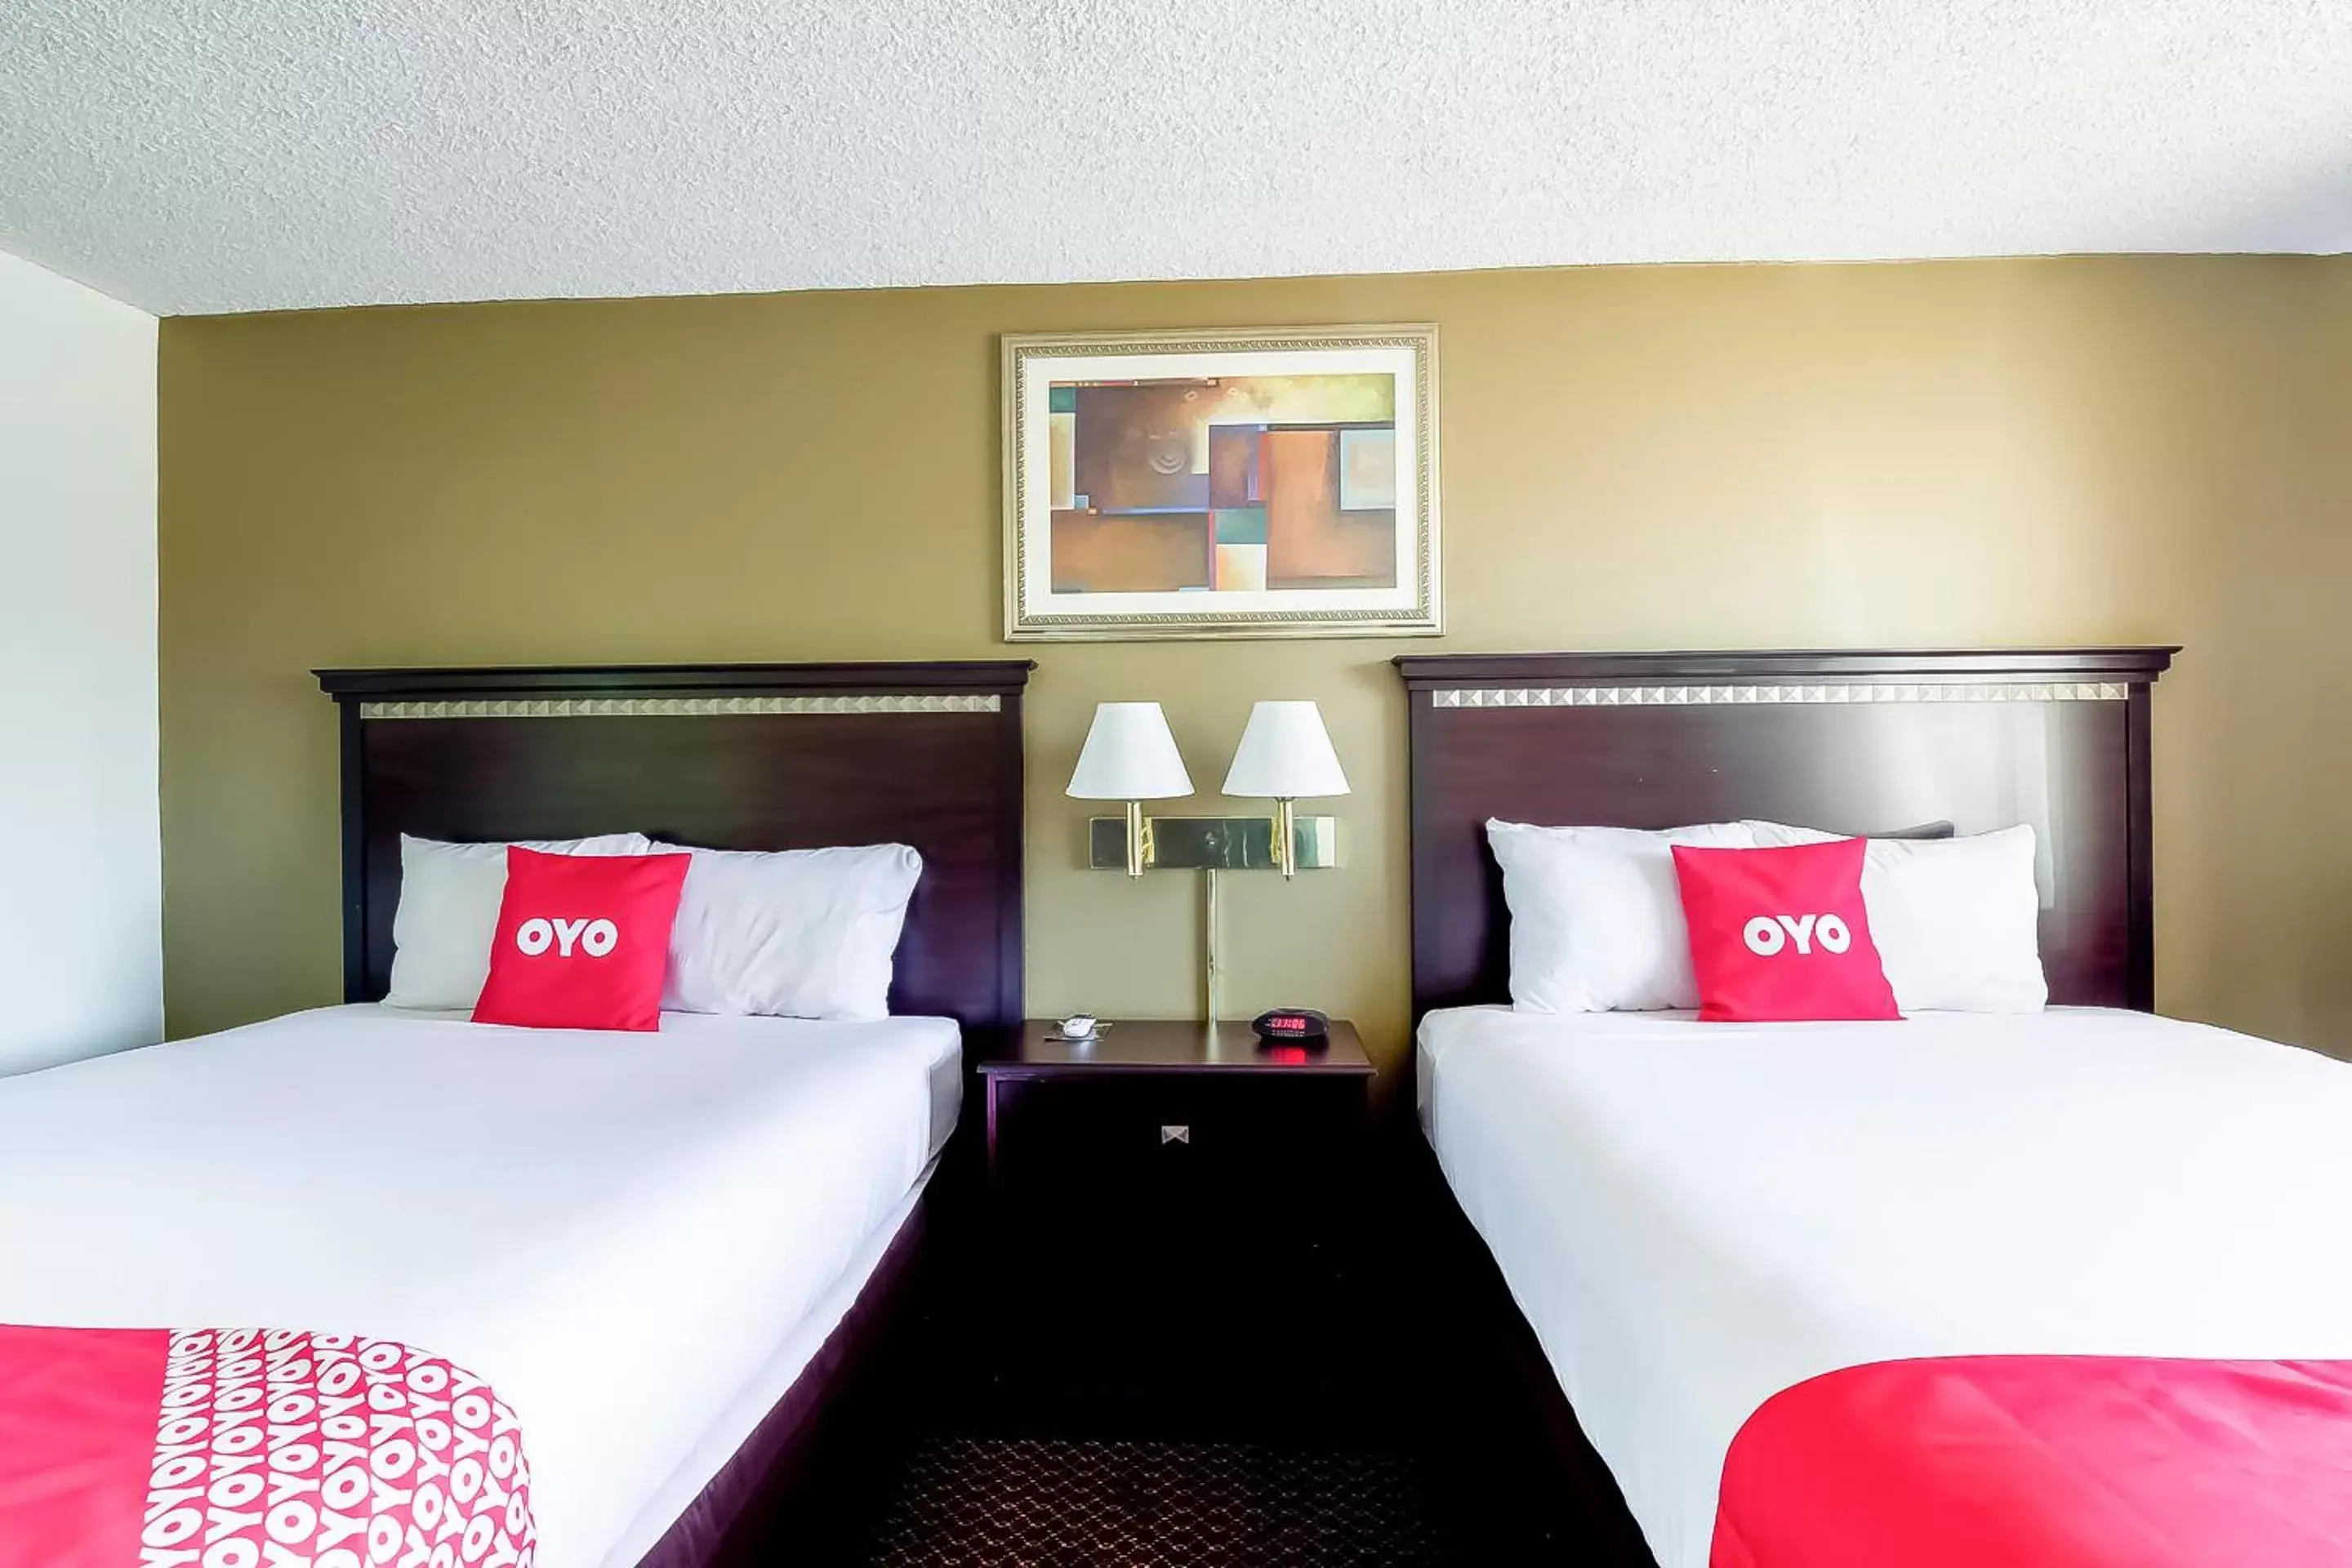 Bedroom, Bed in OYO Hotel Eloy Casa Grande near I-10